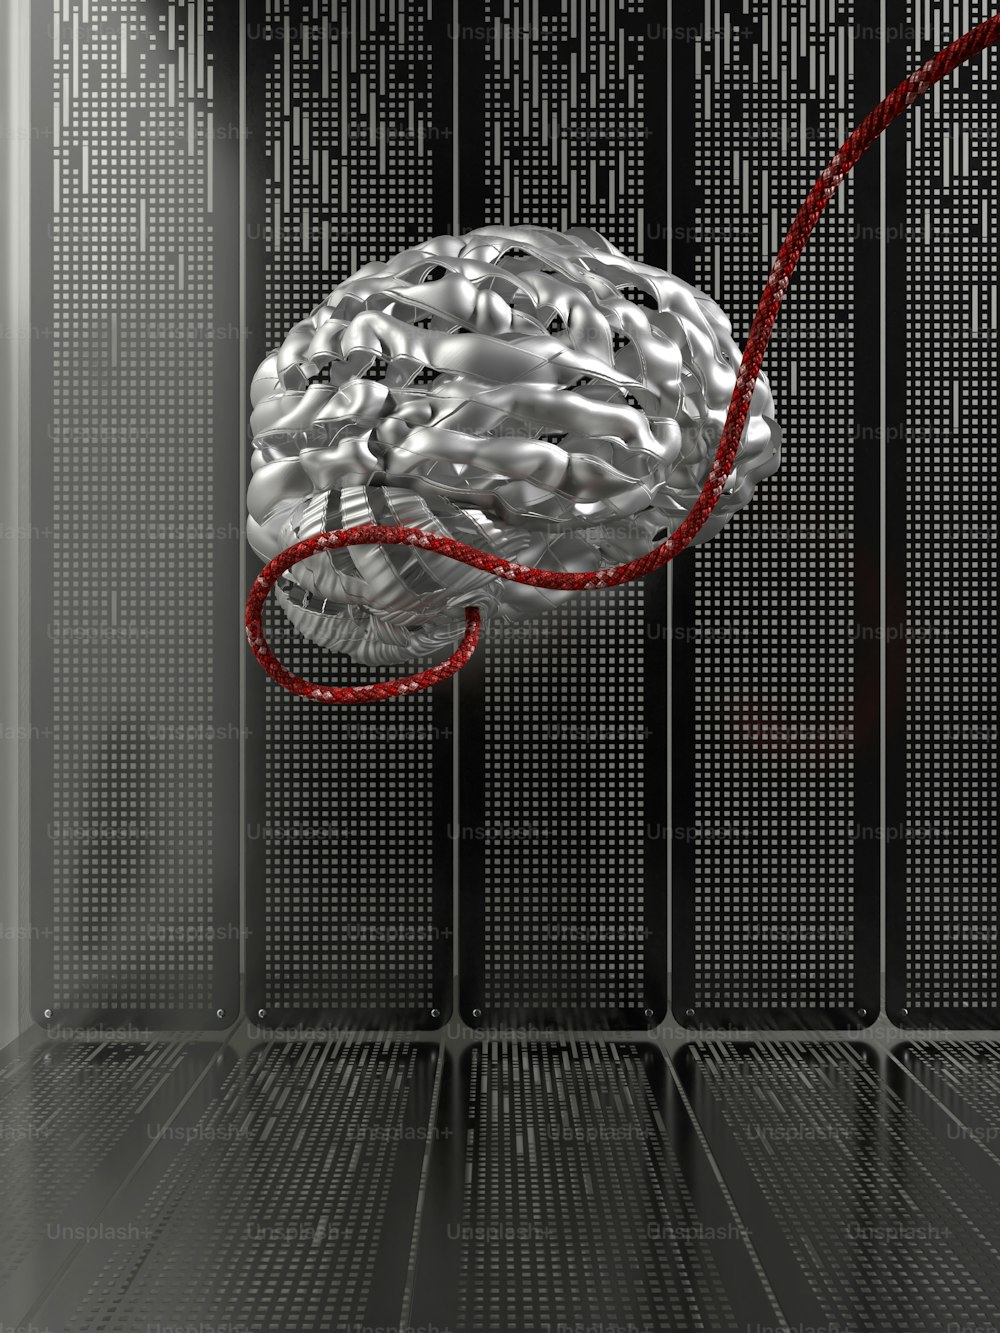 Un cerebro en una sala de servidores con un cable rojo conectado a él